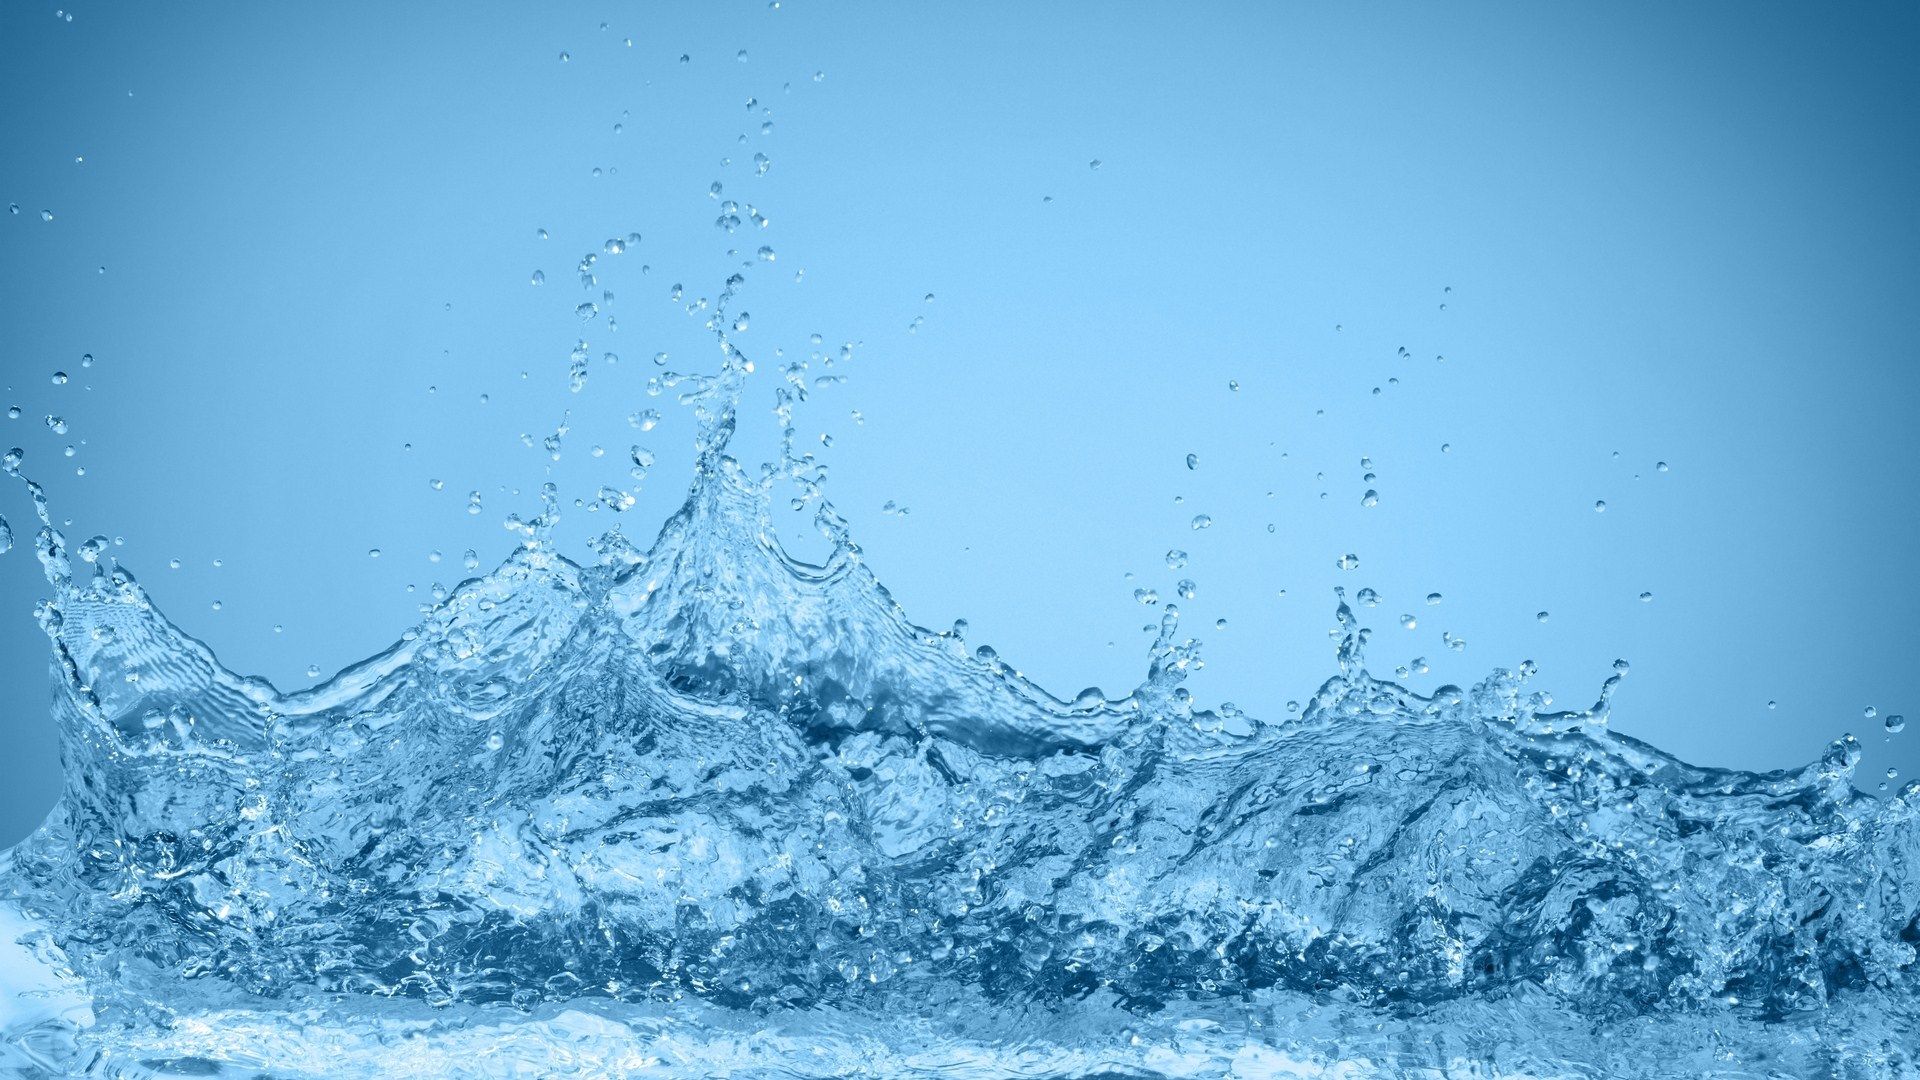 Water Splash Hd Background Free Download Cbeditz